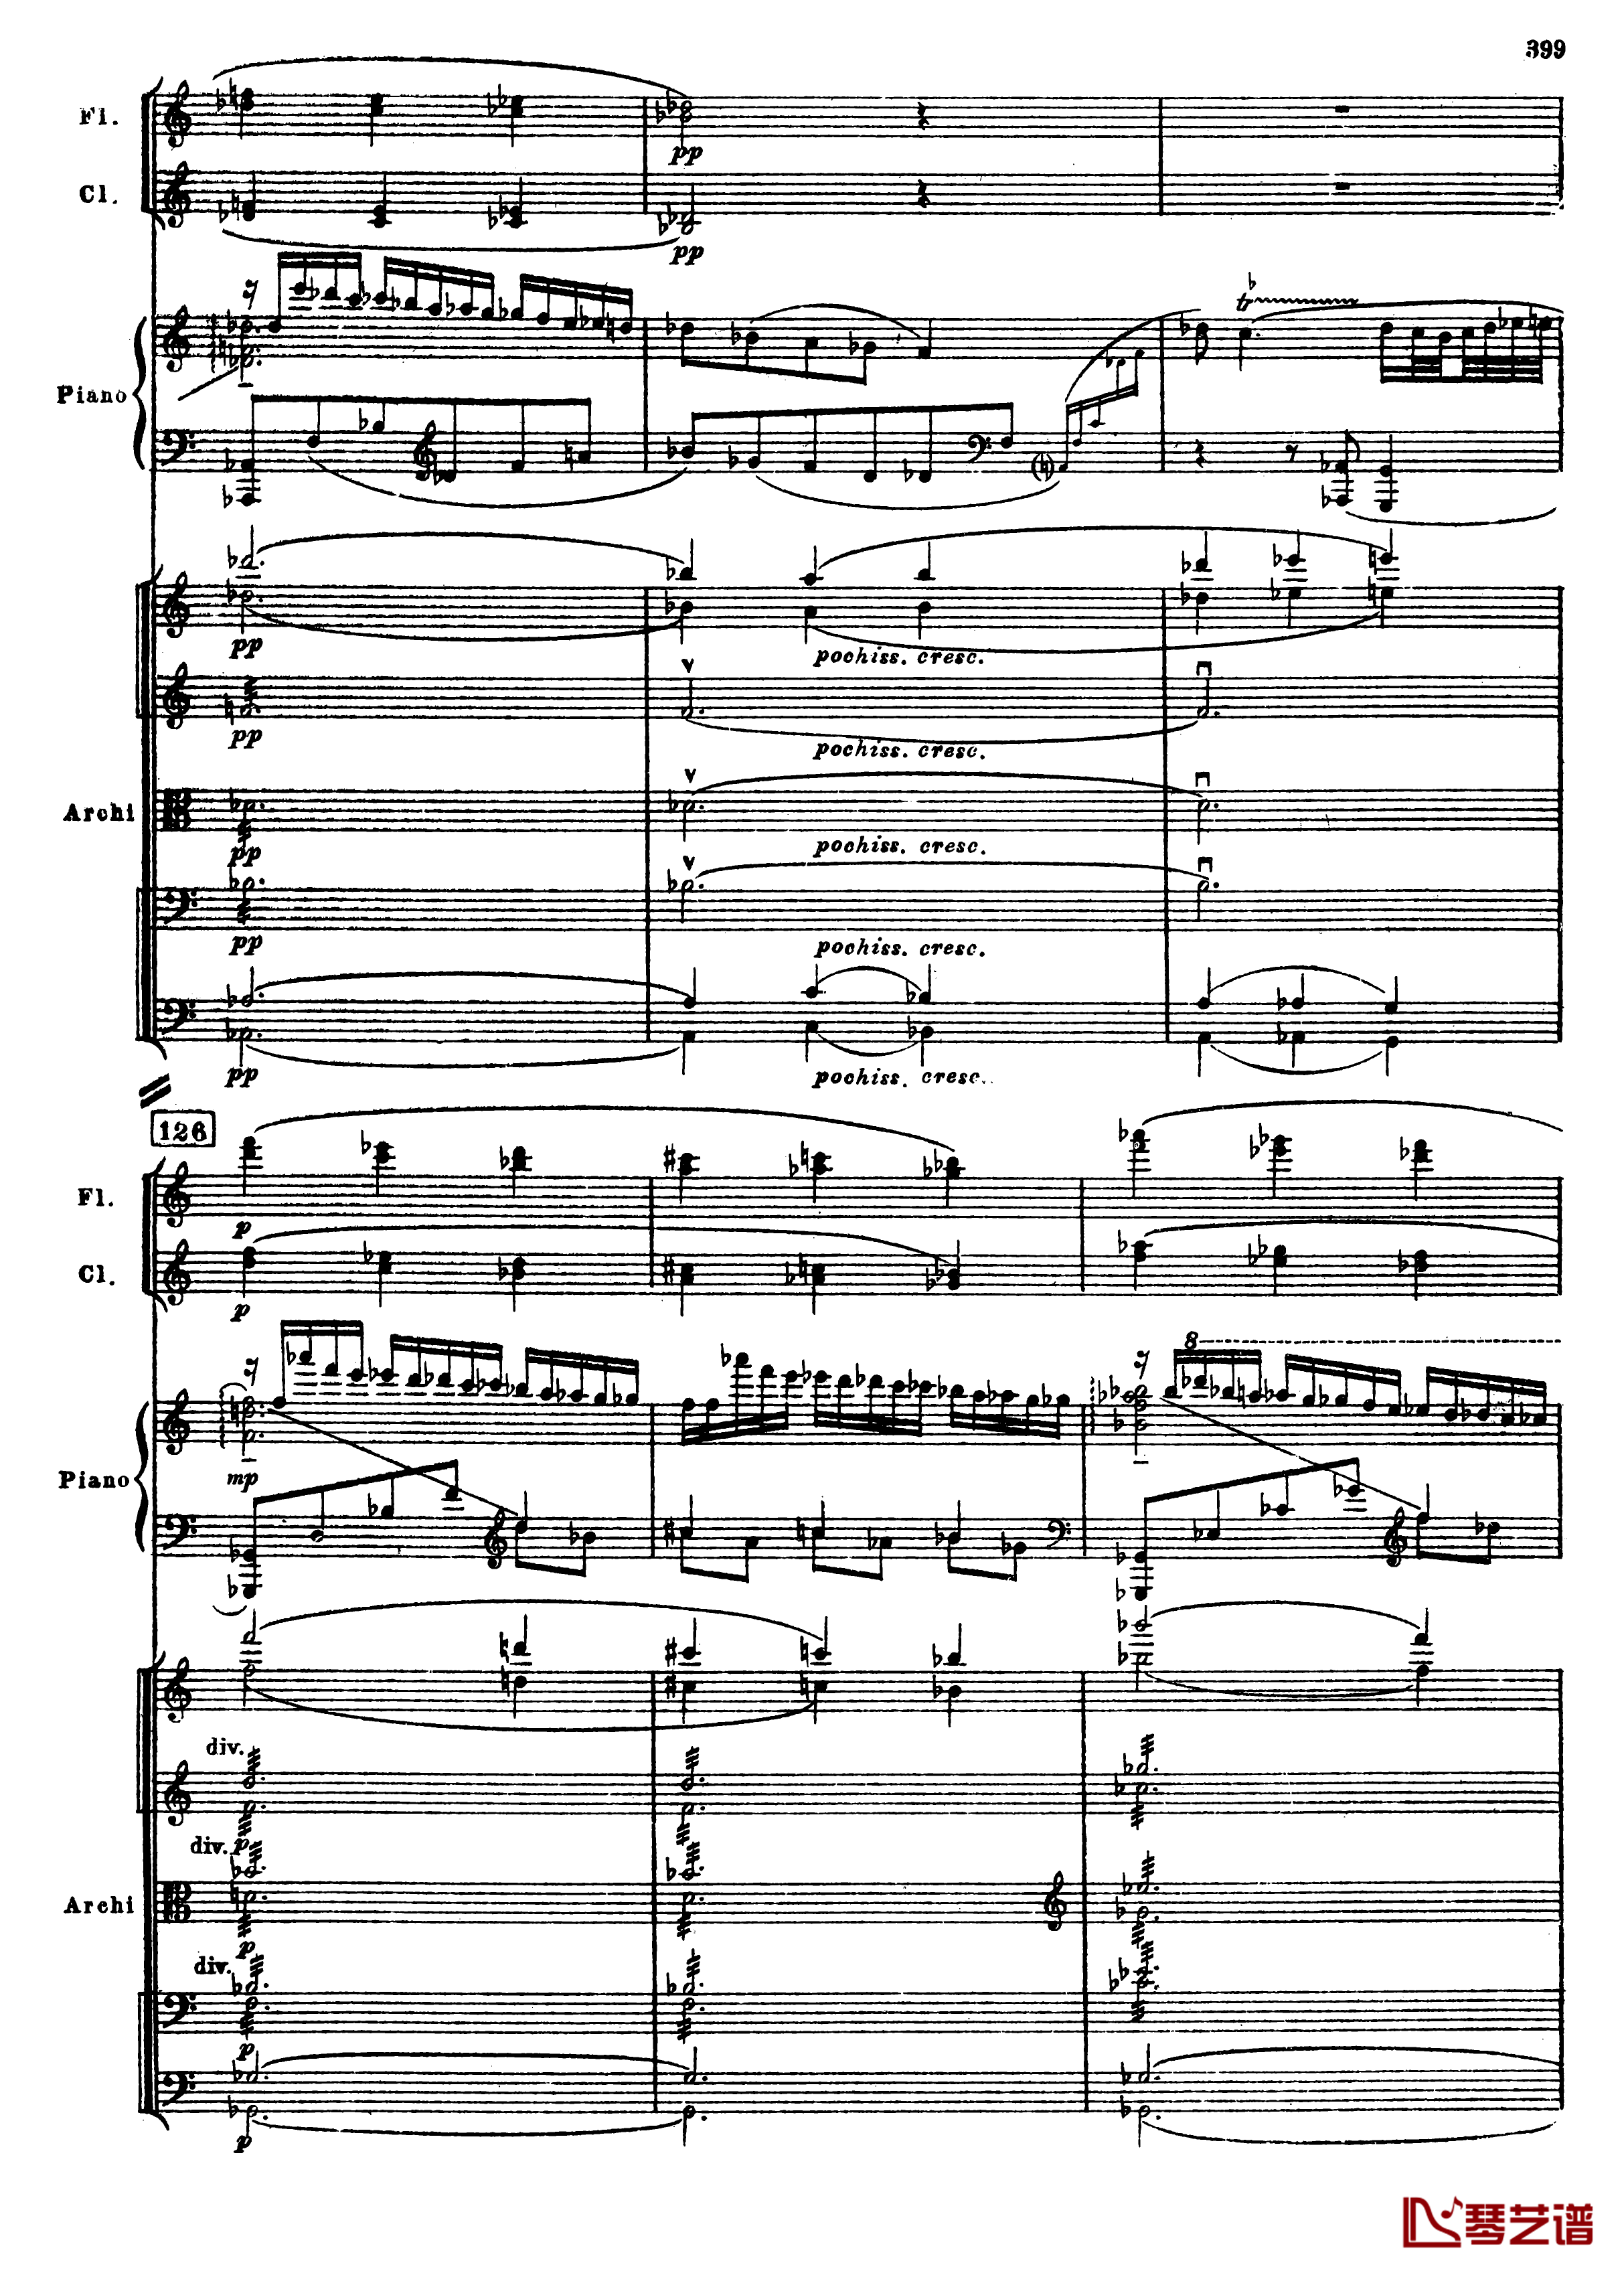 普罗科菲耶夫第三钢琴协奏曲钢琴谱-总谱-普罗科非耶夫131